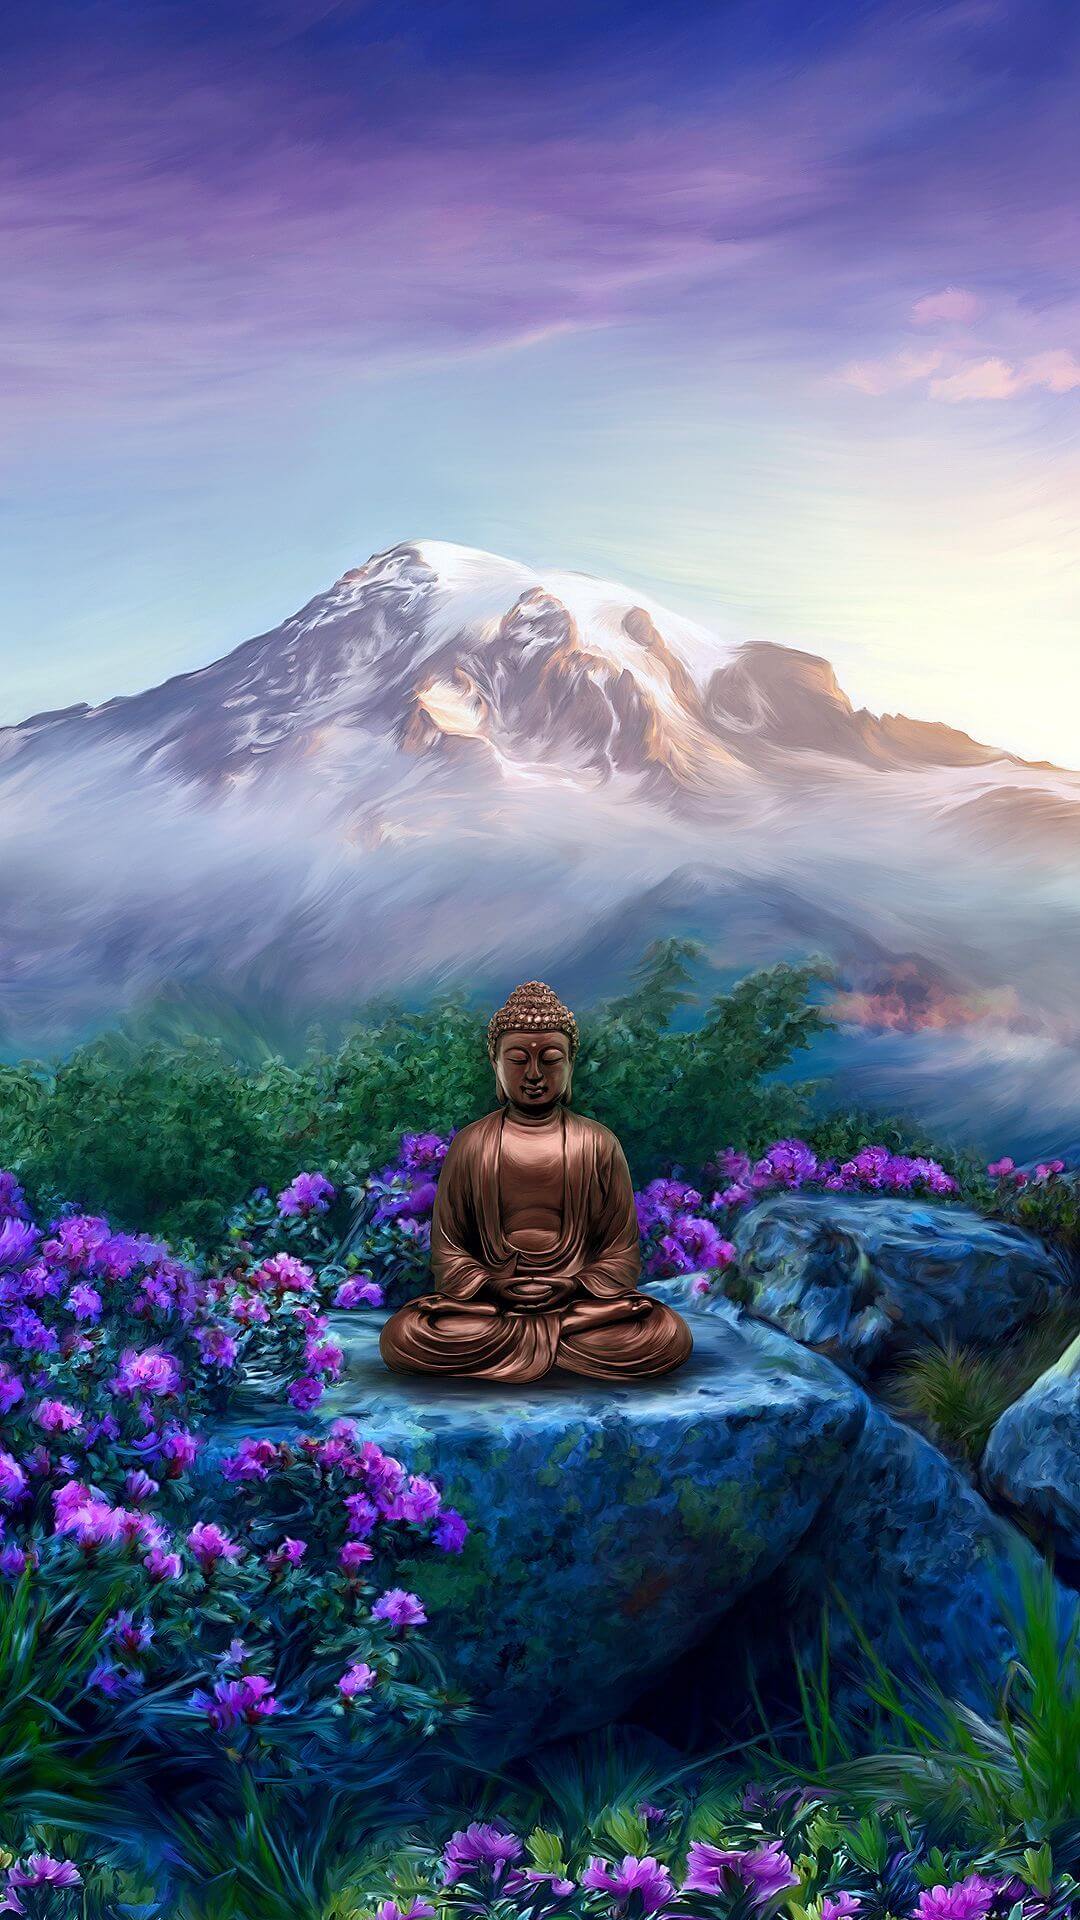 Những bức ảnh Phật giáo đẹp sẽ mang đến cho bạn sự lãng mạn, đẹp đẽ và giản dị mà chỉ có đạo Phật mới có được. Hãy thưởng thức những hình ảnh đầy tinh tế này và cảm nhận sự thanh tịnh trong tâm hồn.